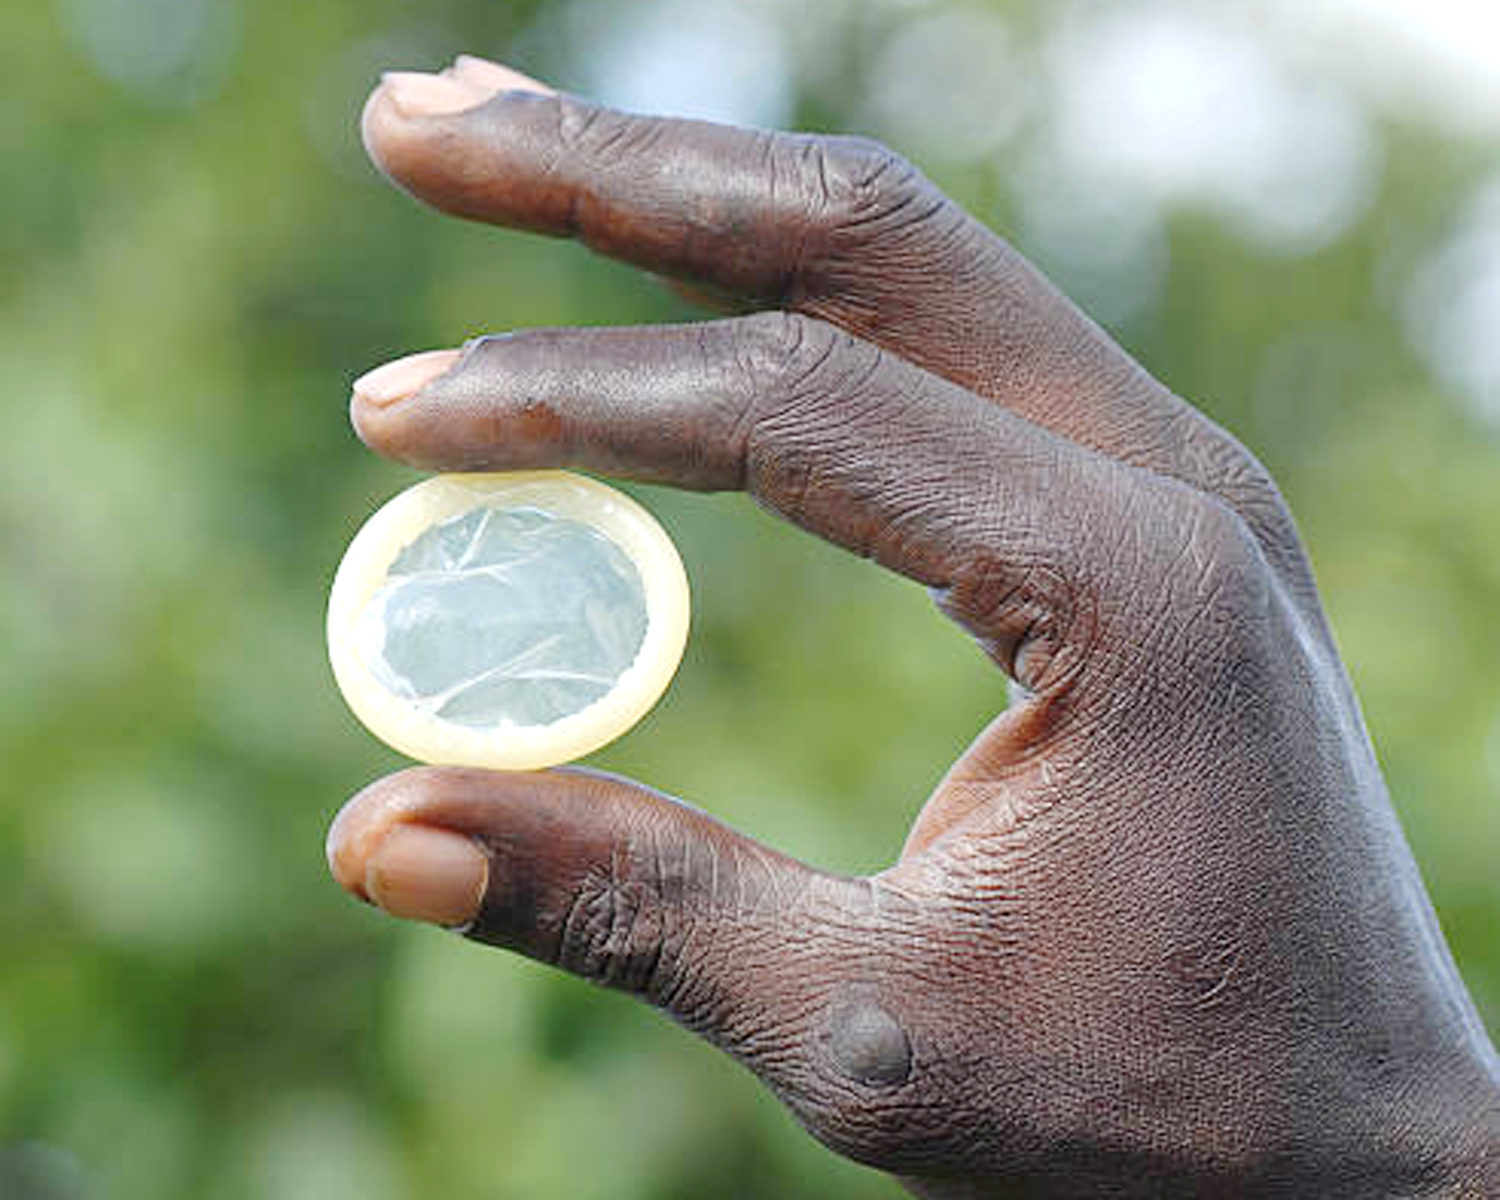 Condoms too small for Ugandans - legislators